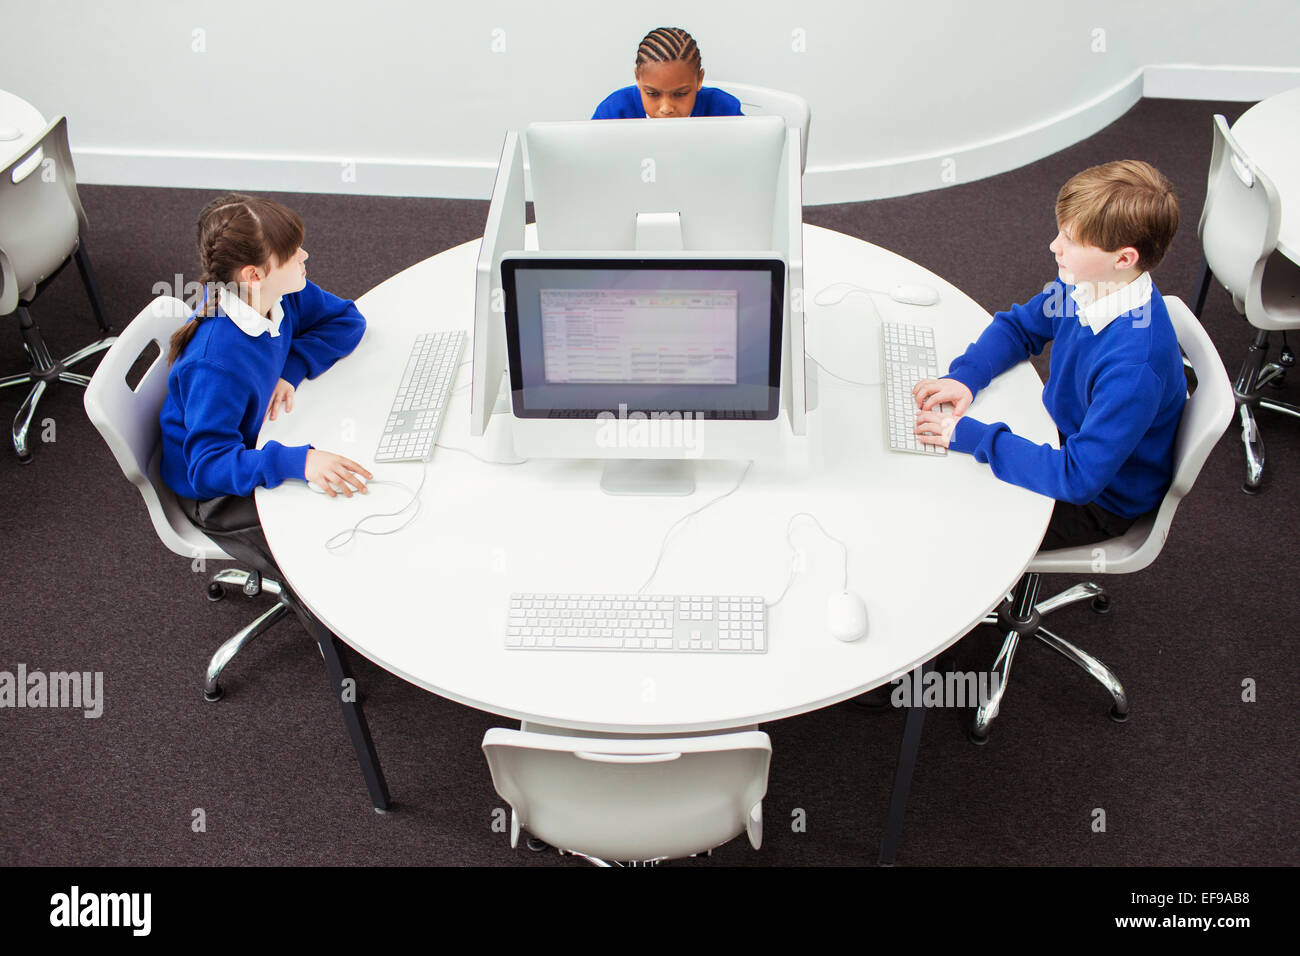 Les enfants de l'école primaire travaillant avec les ordinateurs pendant la leçon il Banque D'Images